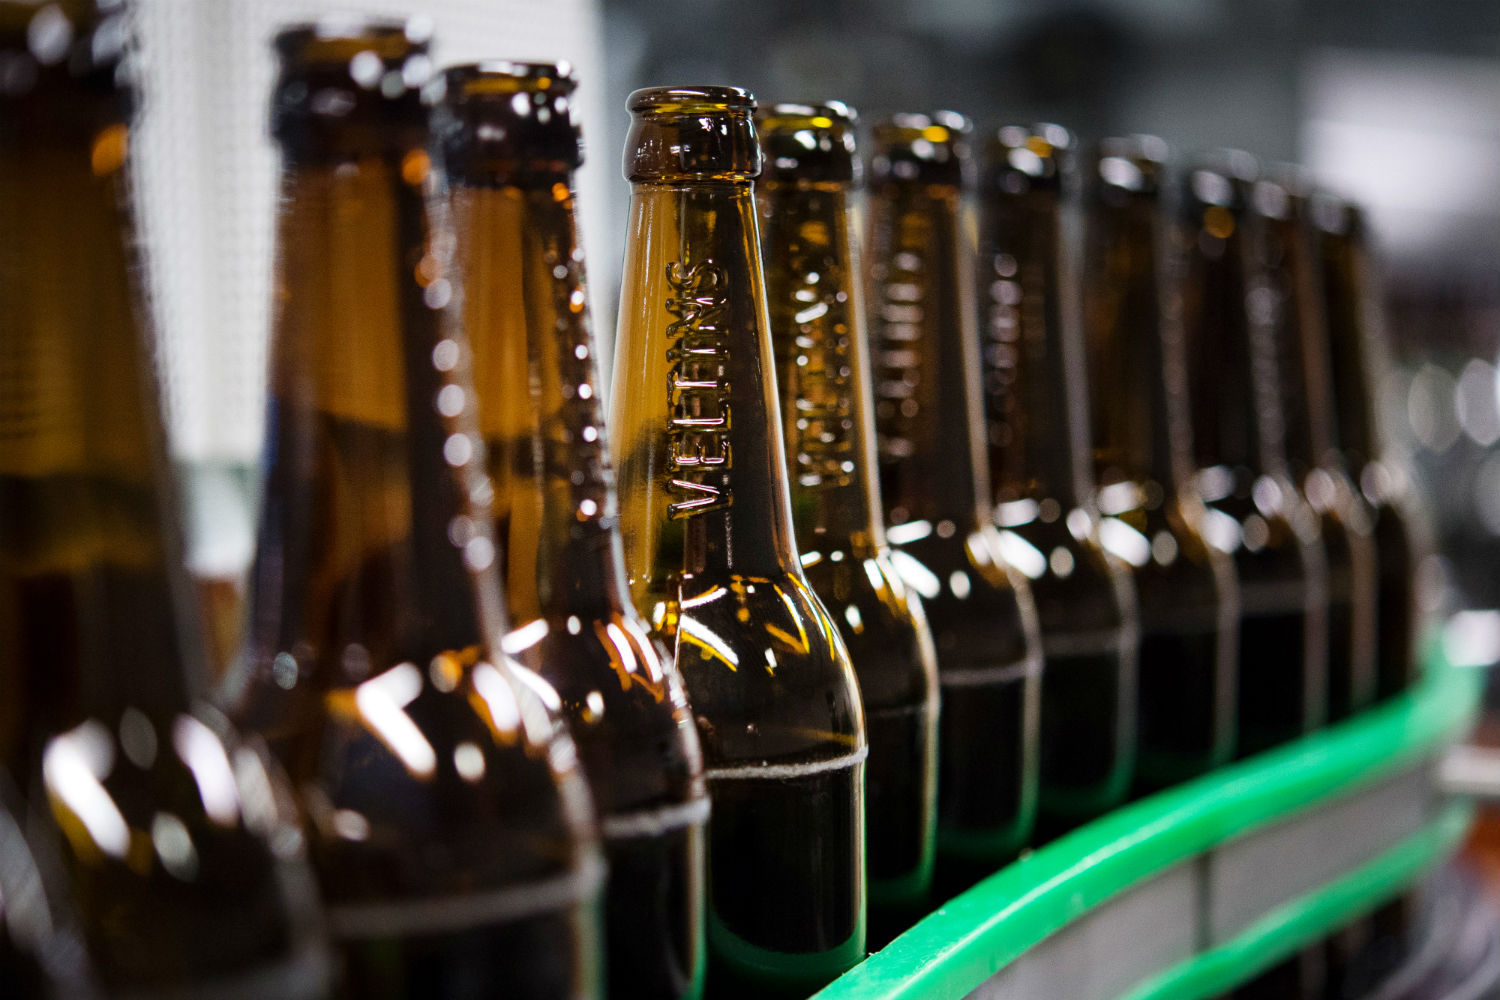 El calor duplicó consumo de cerveza en Alemania, fabricantes se quedan sin botellas